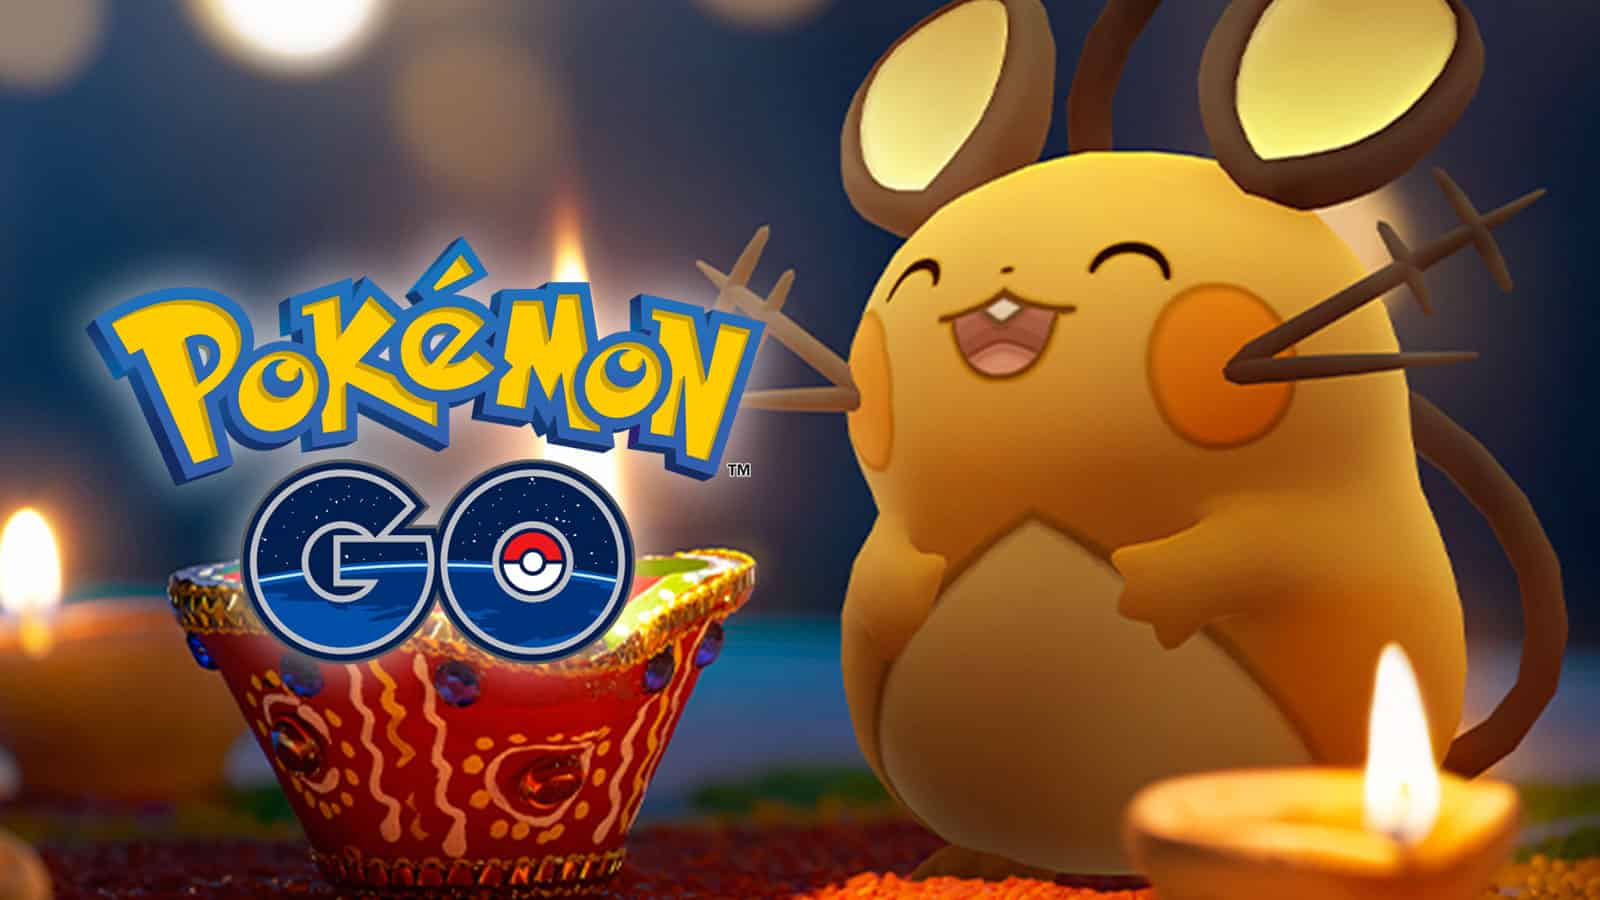 Pokémon Go : Fête des lumières – Dedenne, Études de terrain, Raids… 